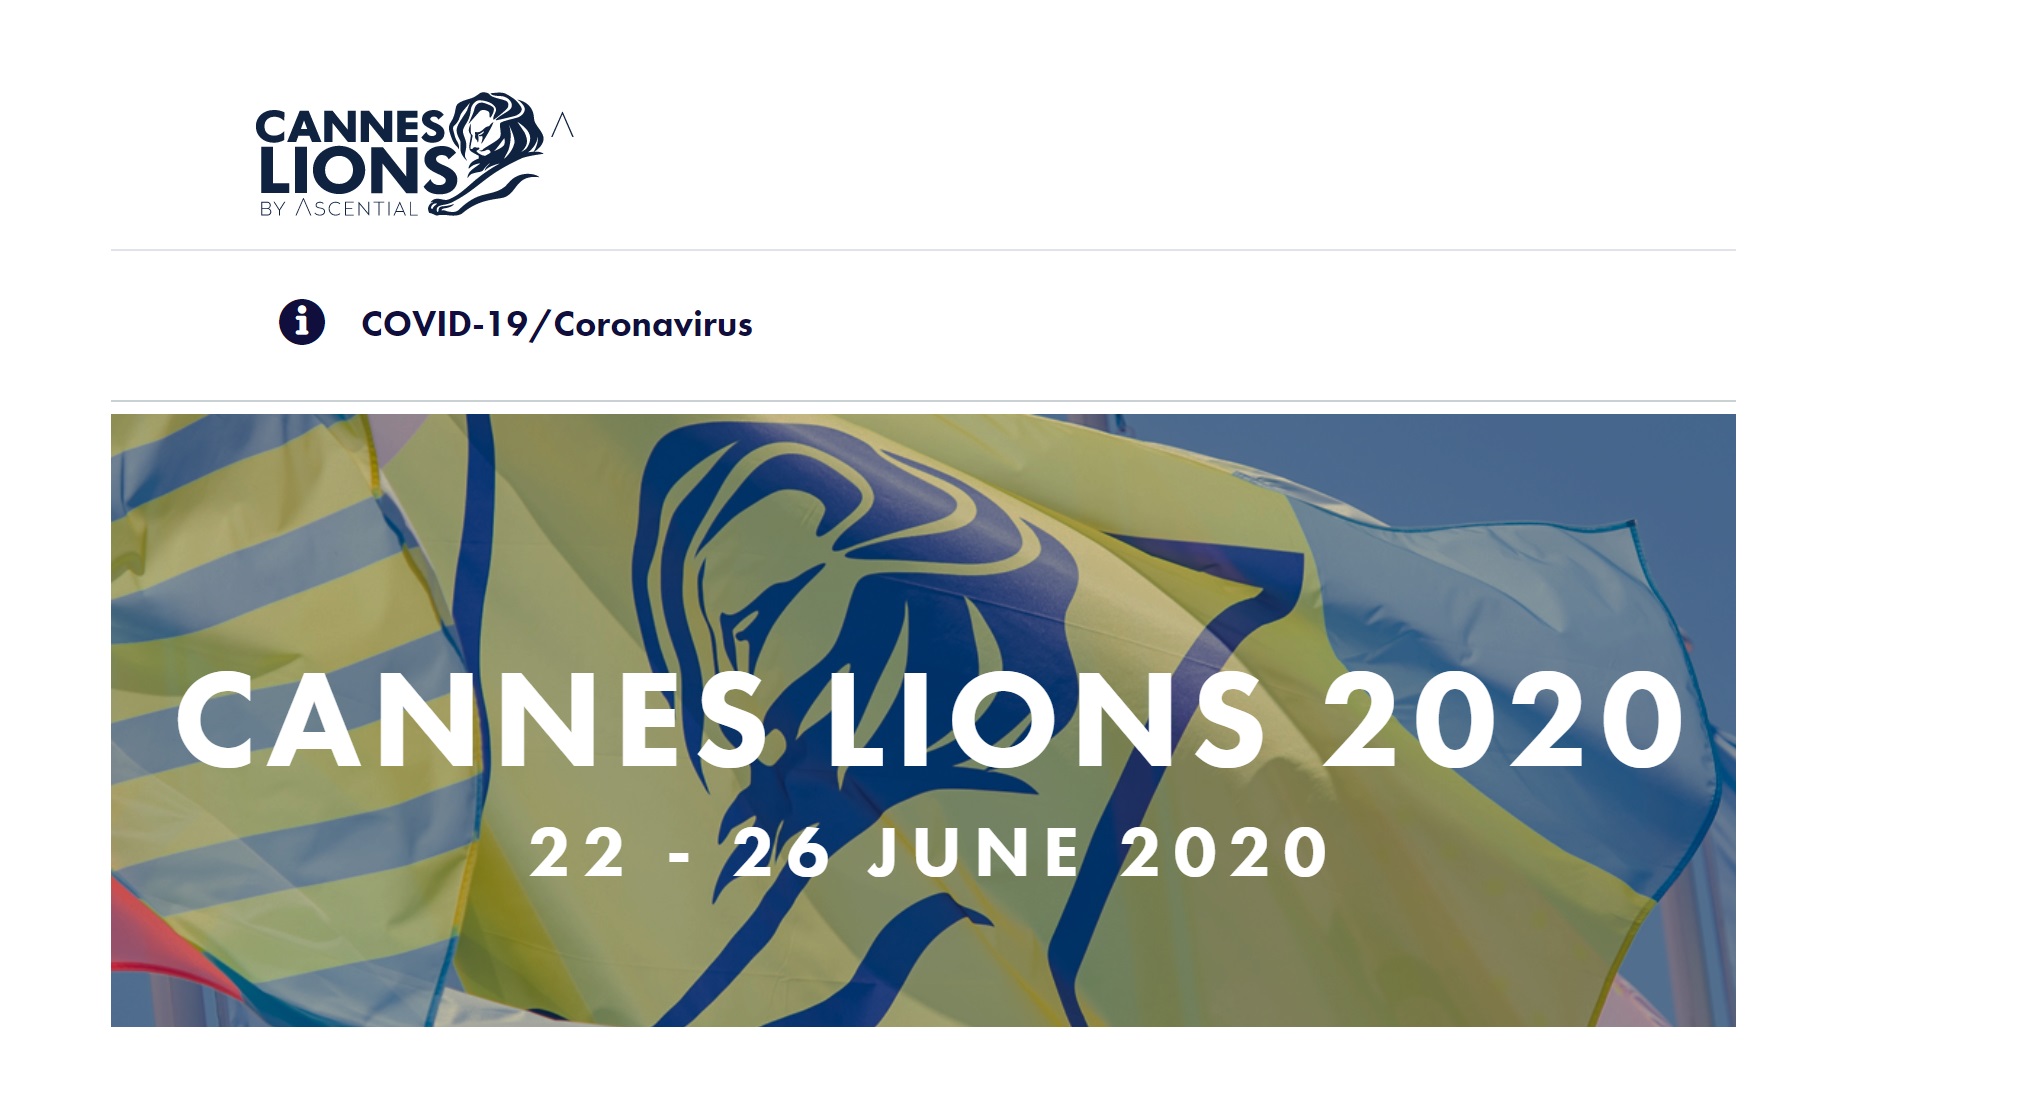 Cannes Lions evalúa 26 al 30 octubre, 2020 ProgPublicidad